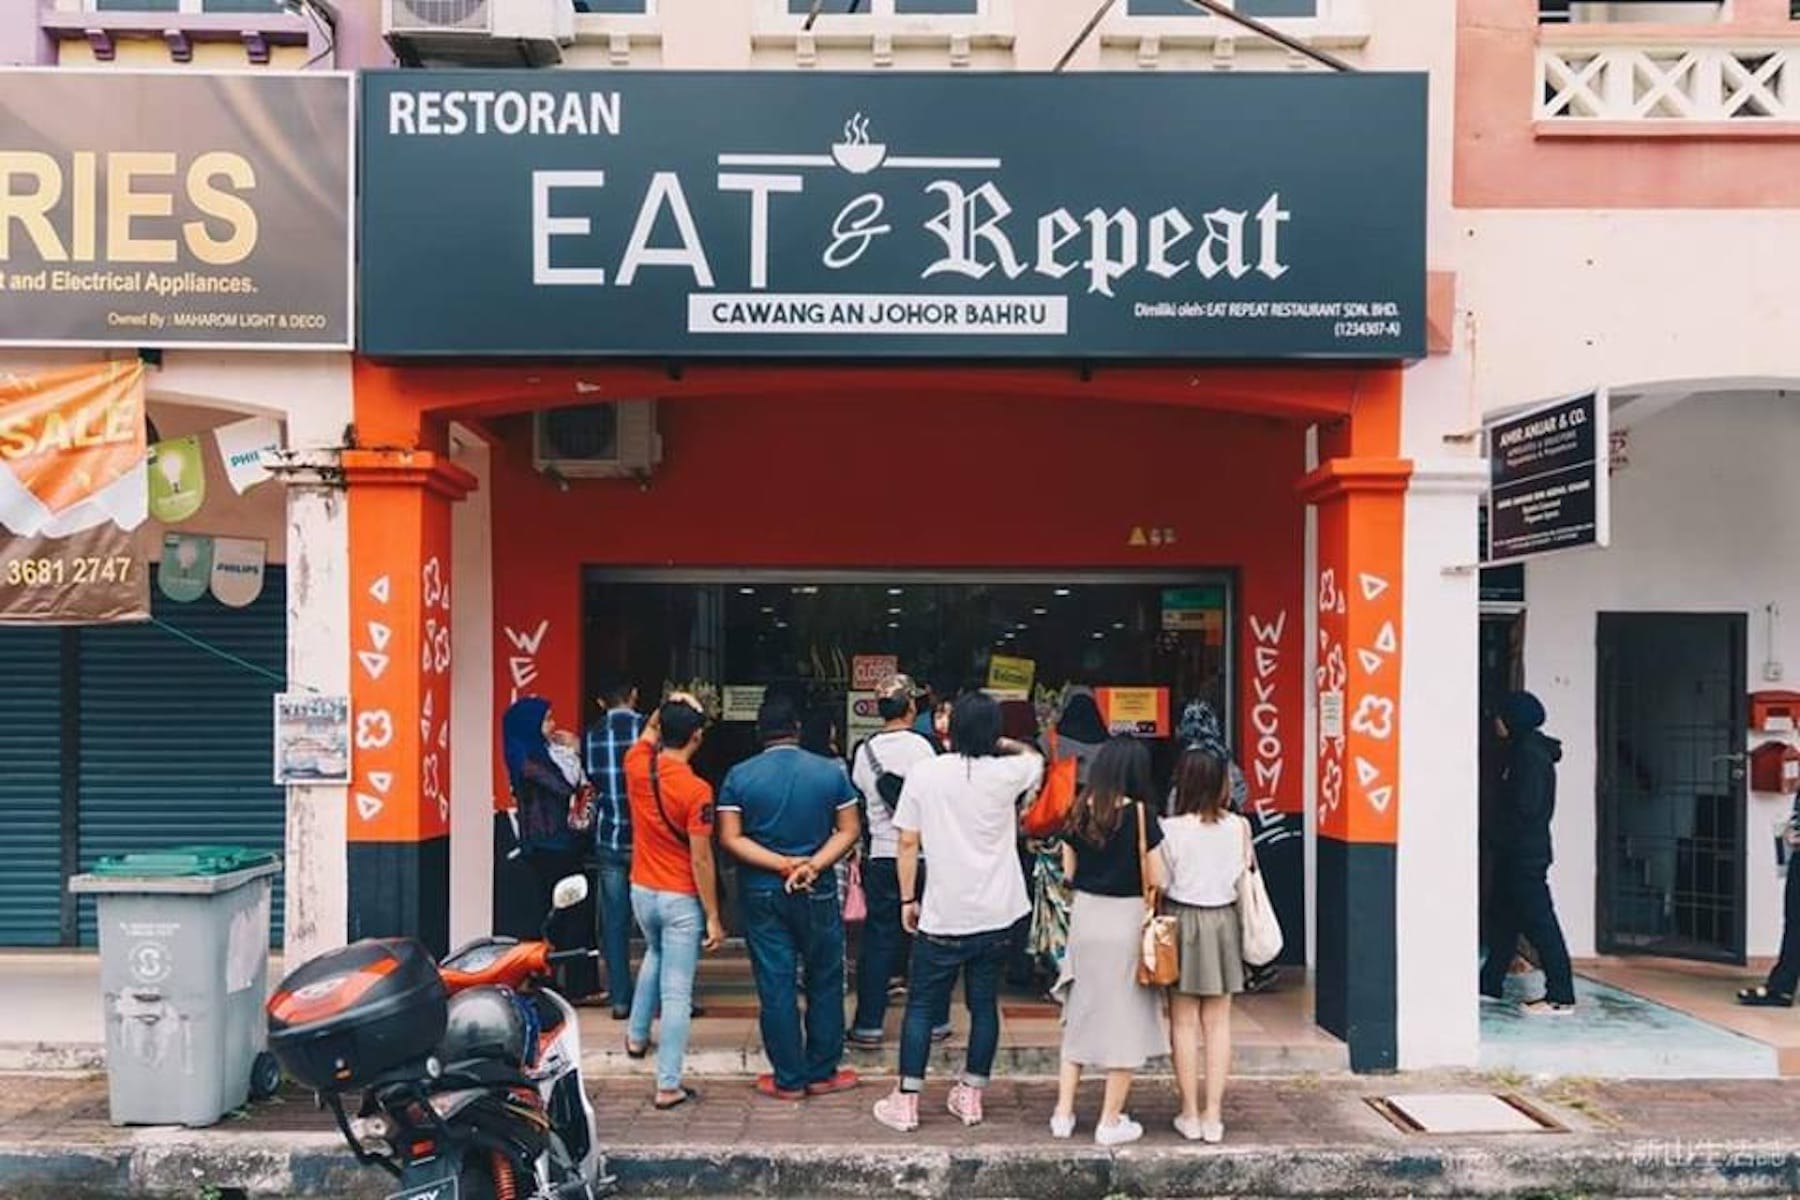 Eat & Repeat 1